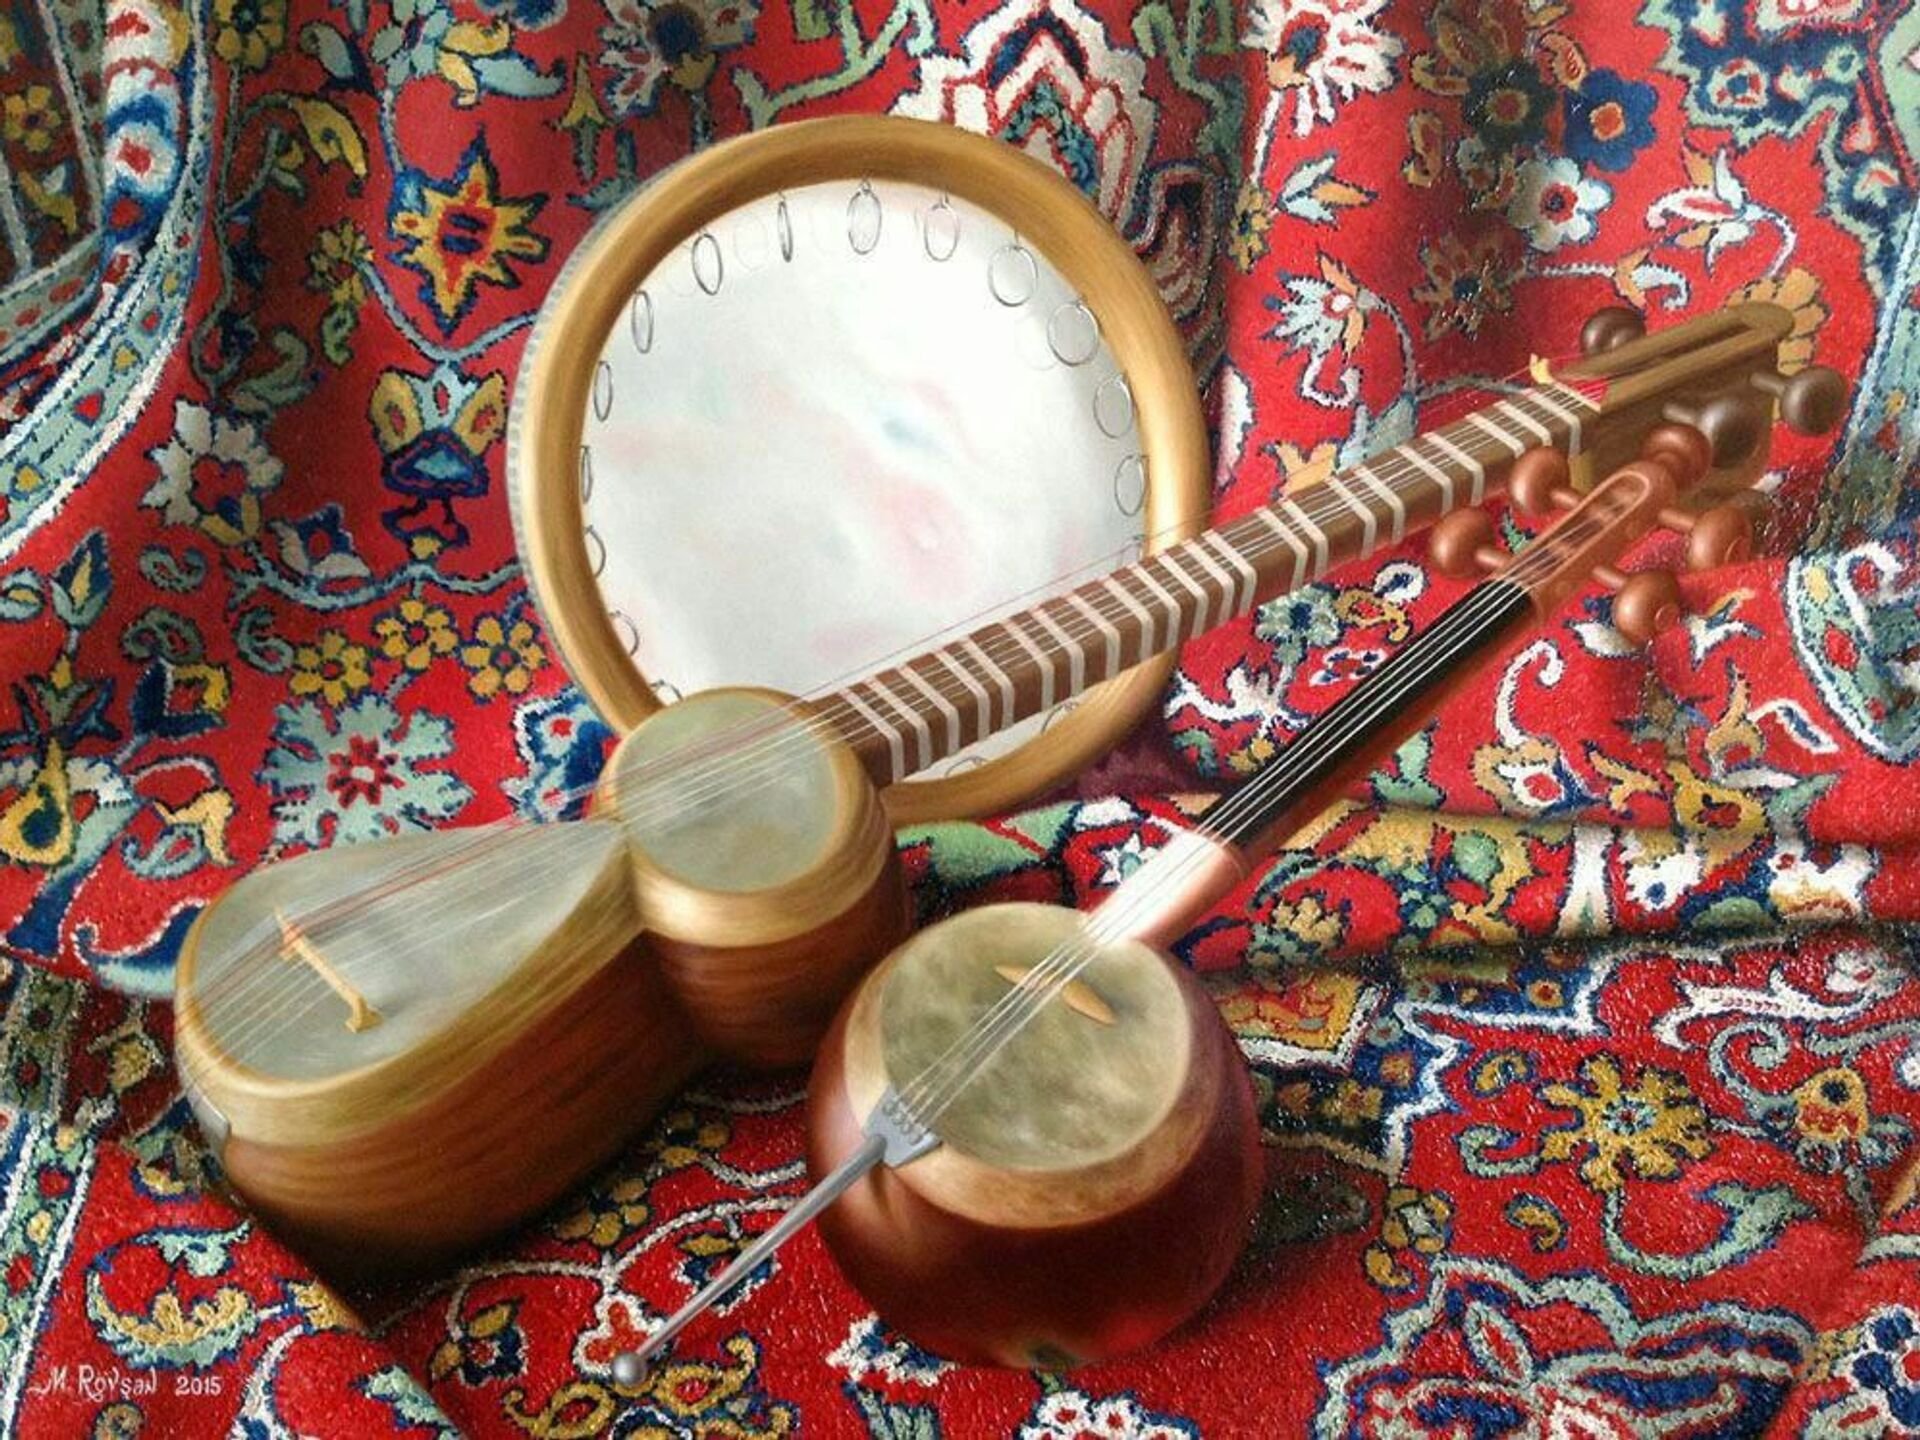 Таджикские инструменты. Узбекский музыкальный инструмент дойра. Узбекские музыкальные инструменты дутар. Народные инструменты Узбекистана дойра. Национальные музыкальные инструменты Таджикистана.